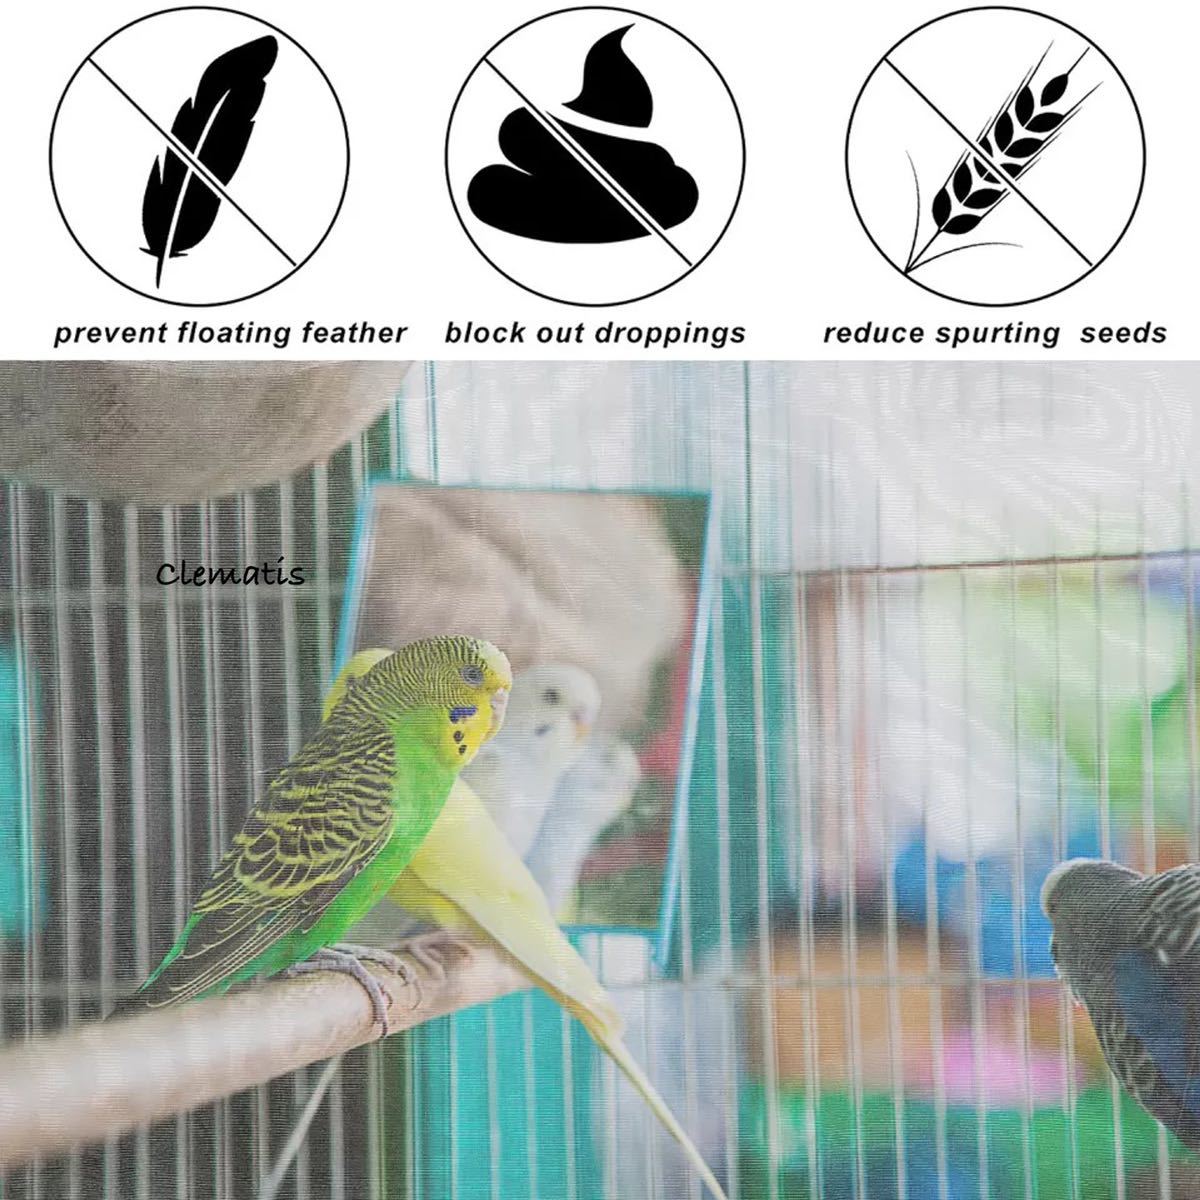 人気急上昇 鳥 小動物 糞 餌飛び散り防止 カバーエサ飛び散り防止ネット 鳥かごネット鳥籠用